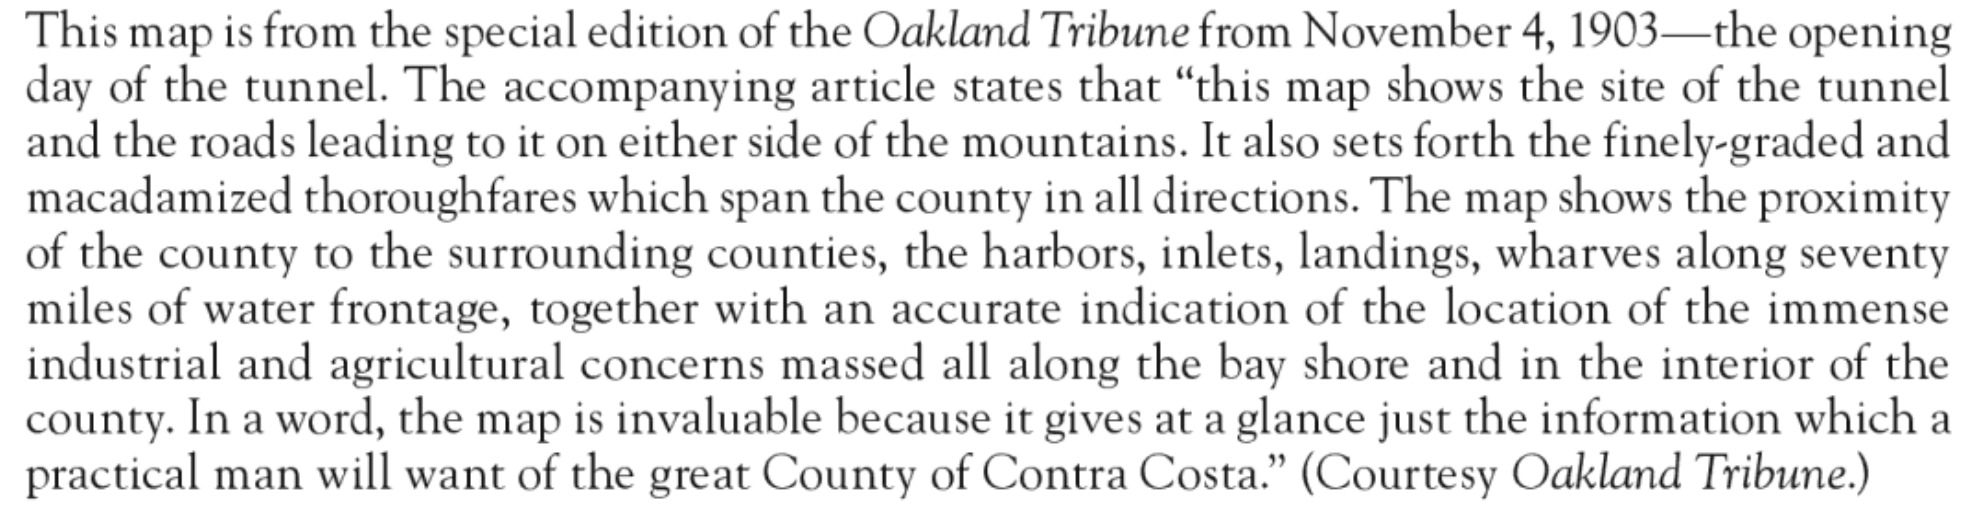 Description of Coco Map Oakland Tribune Nov 1903.jpg